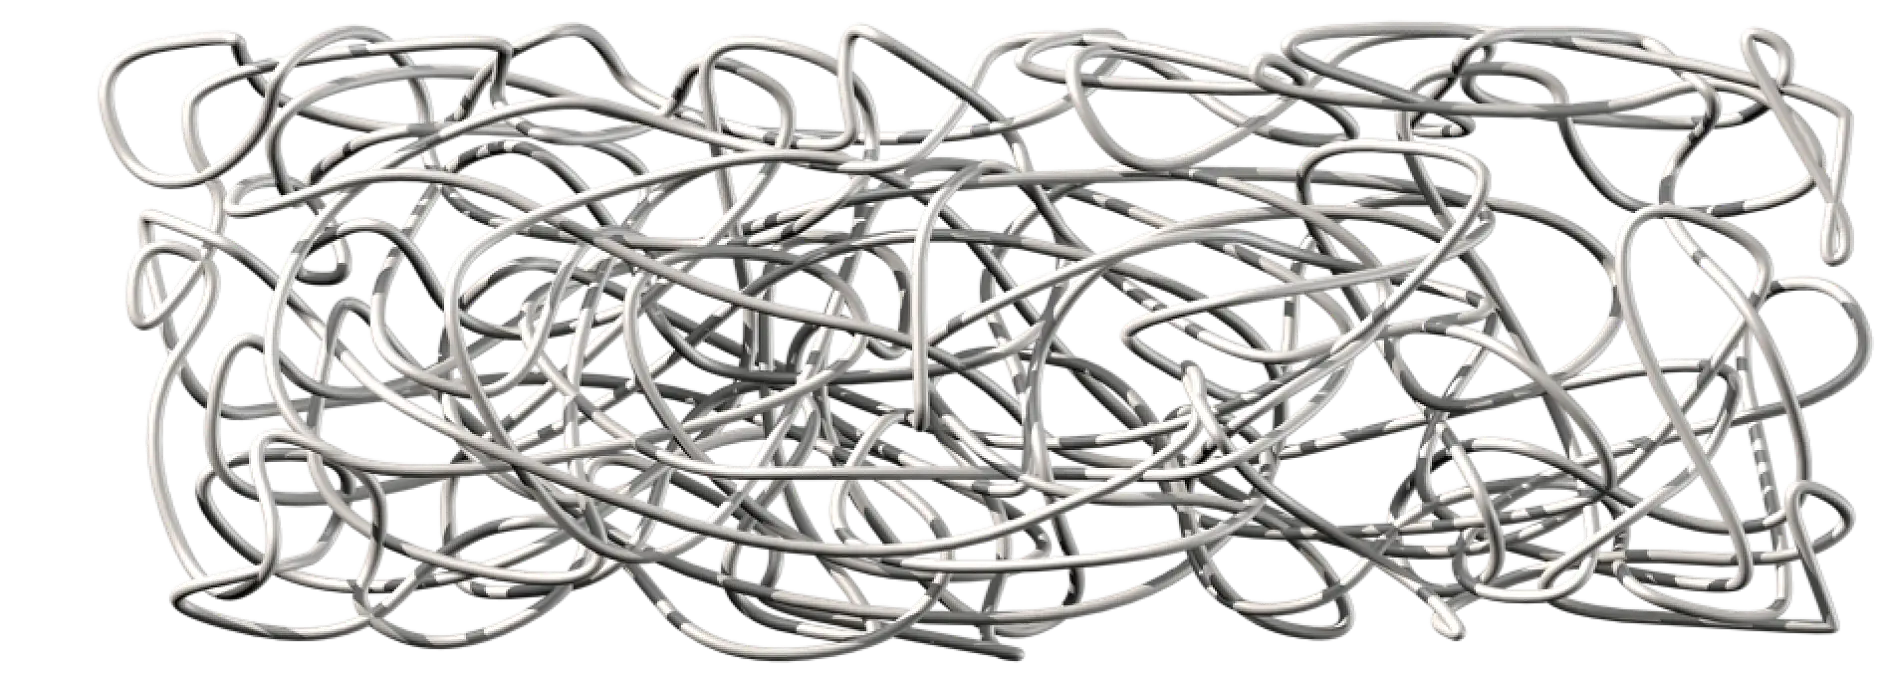 Le caoutchouc naturel est constitué de chaînes polymères extrêmement longues enchevêtrées et non réticulées